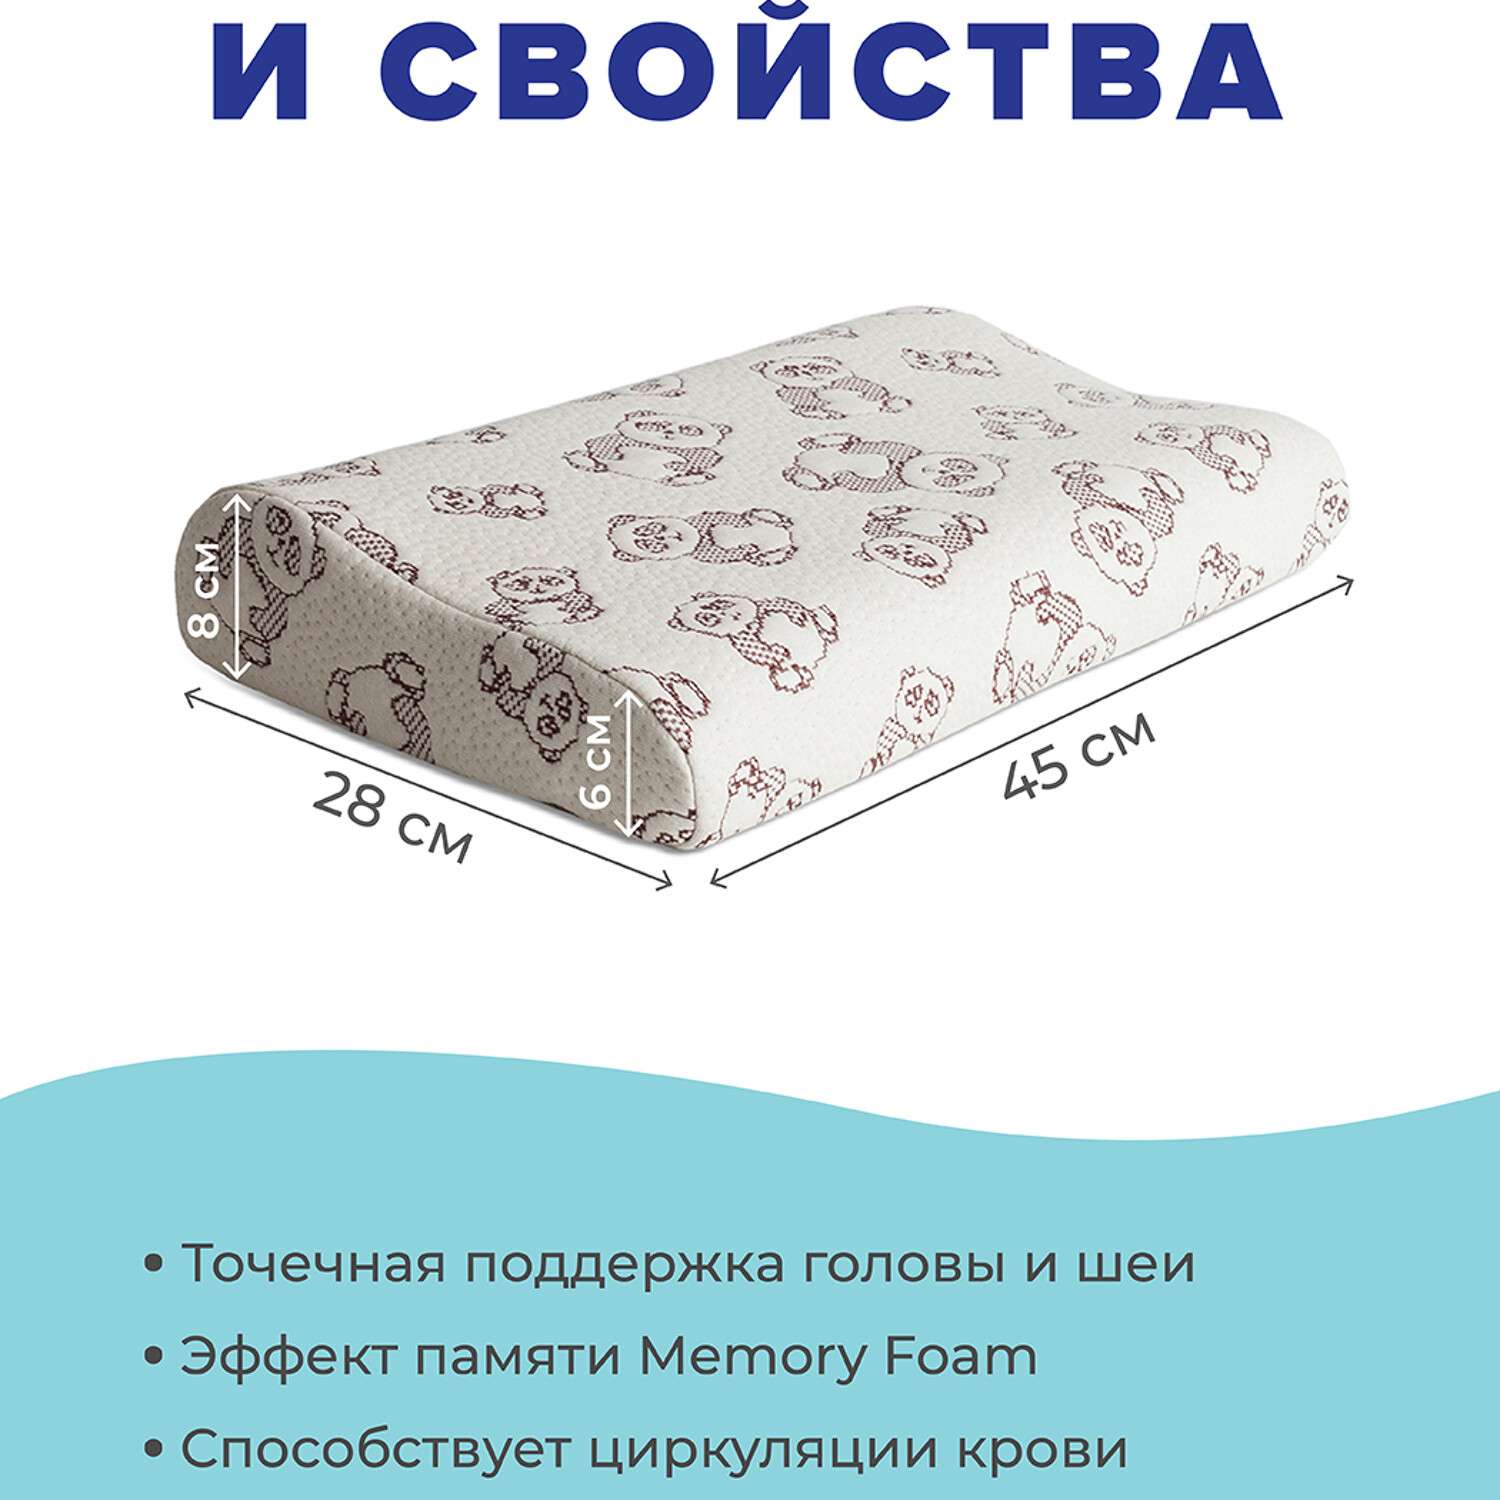 Ортопедическая подушка Ambesonne детская с эффектом памяти Memory Foam 45x28 см - фото 3